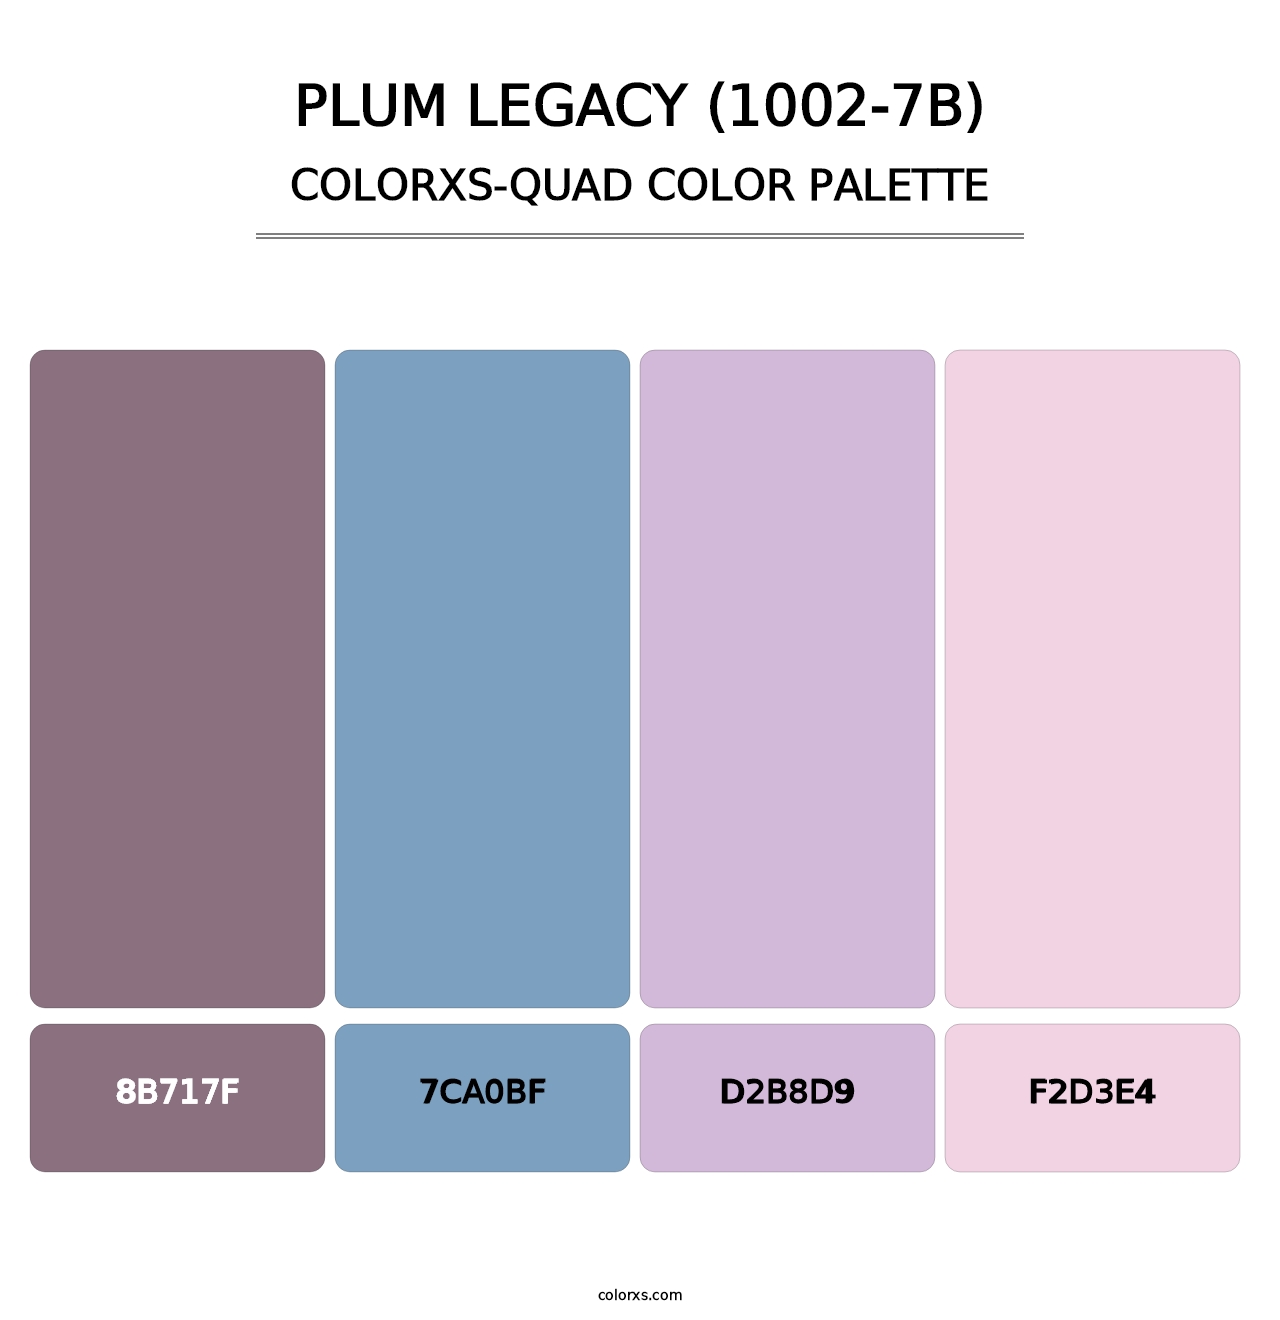 Plum Legacy (1002-7B) - Colorxs Quad Palette